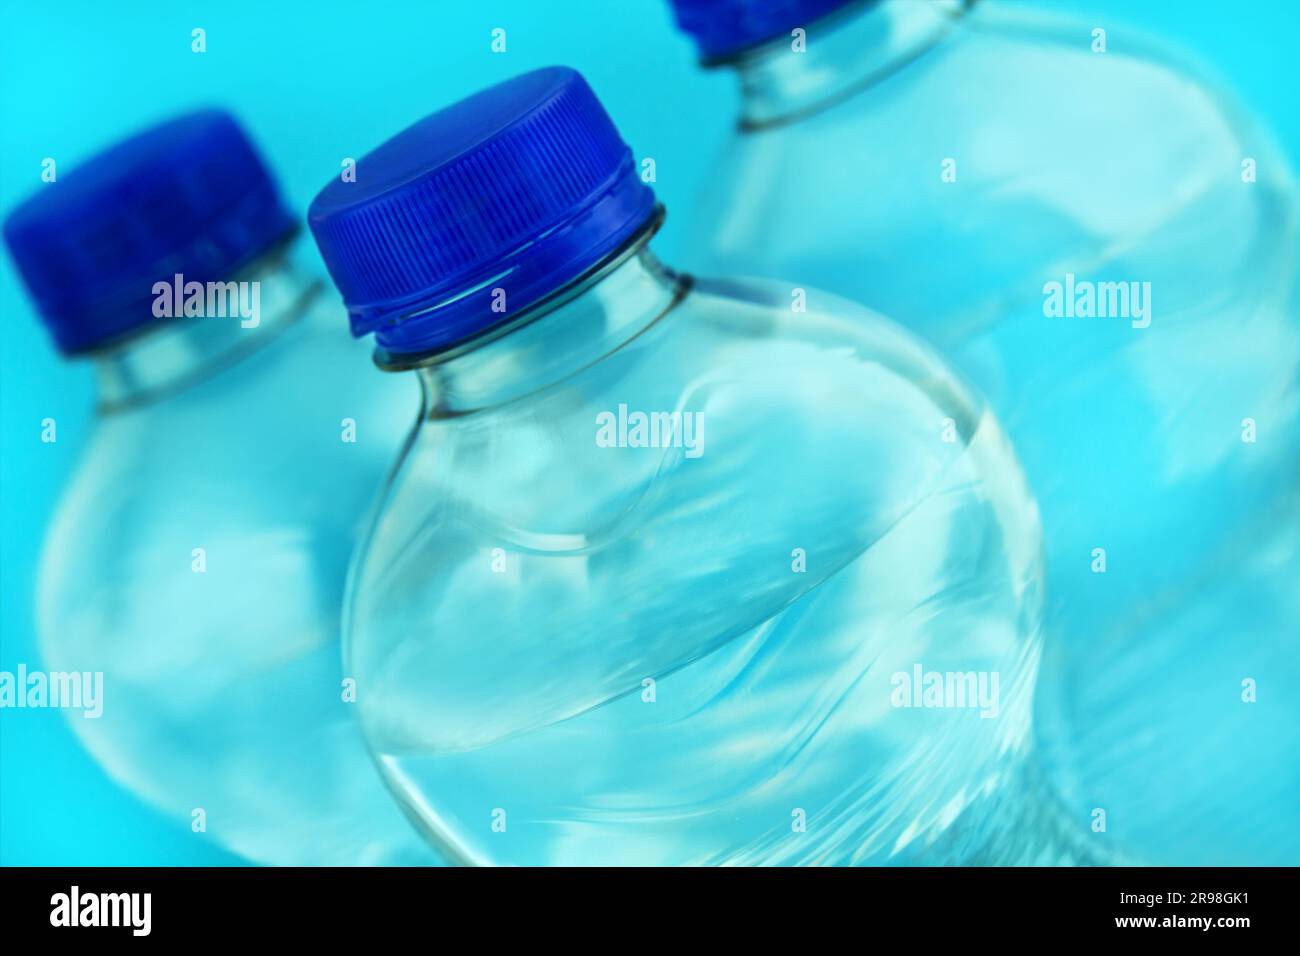 3 Flaschen Mineralwasser in der Nahaufnahme und blauer Hintergrund Stock Photo